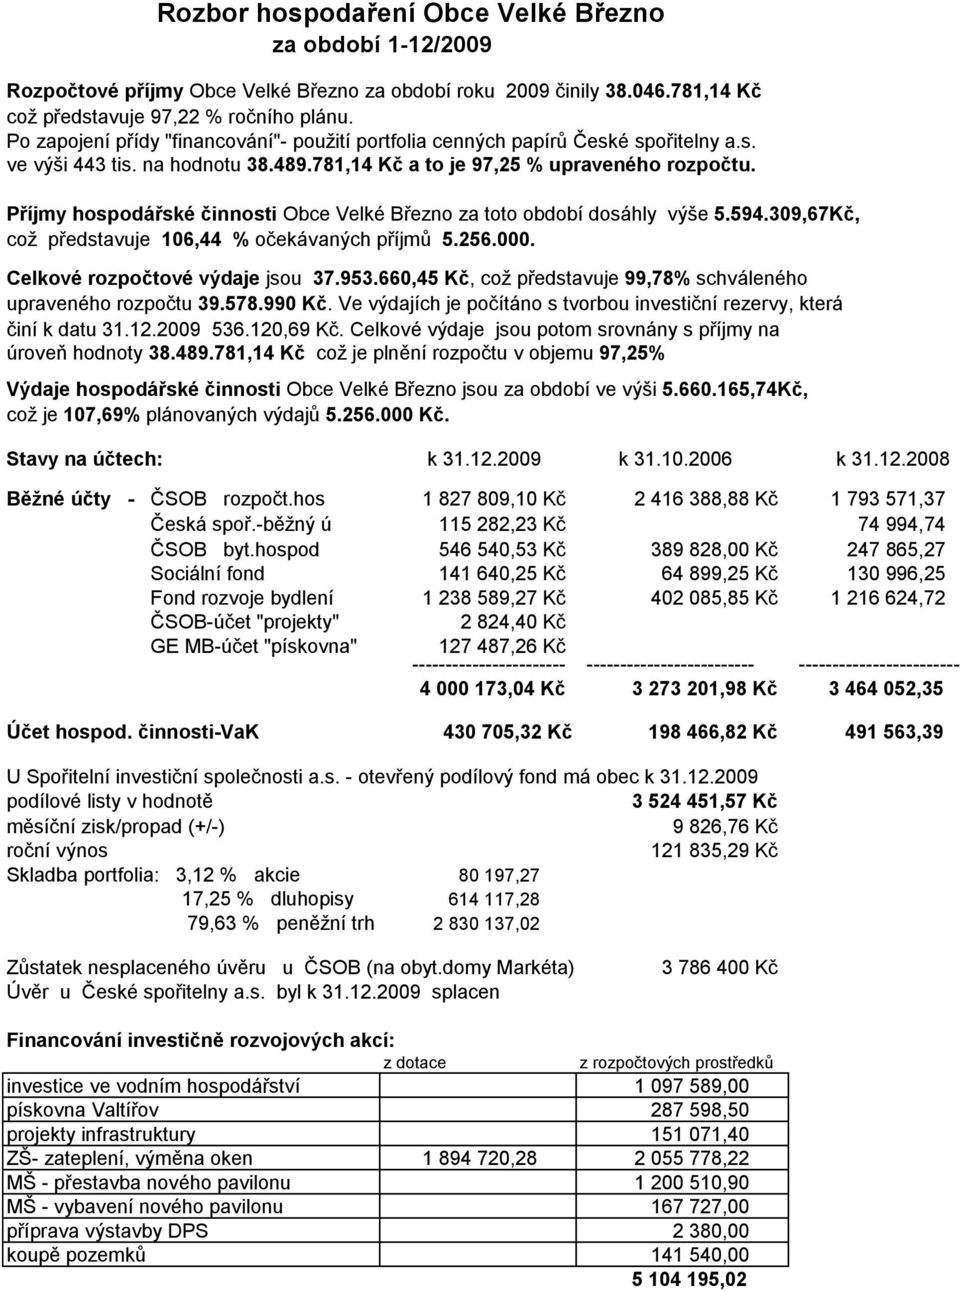 Příjmy hospodářské činnosti Obce Velké Březno za toto období dosáhly výše 5.594.309,67Kč, což představuje 106,44 % očekávaných příjmů 5.256.000. Celkové rozpočtové výdaje jsou 37.953.